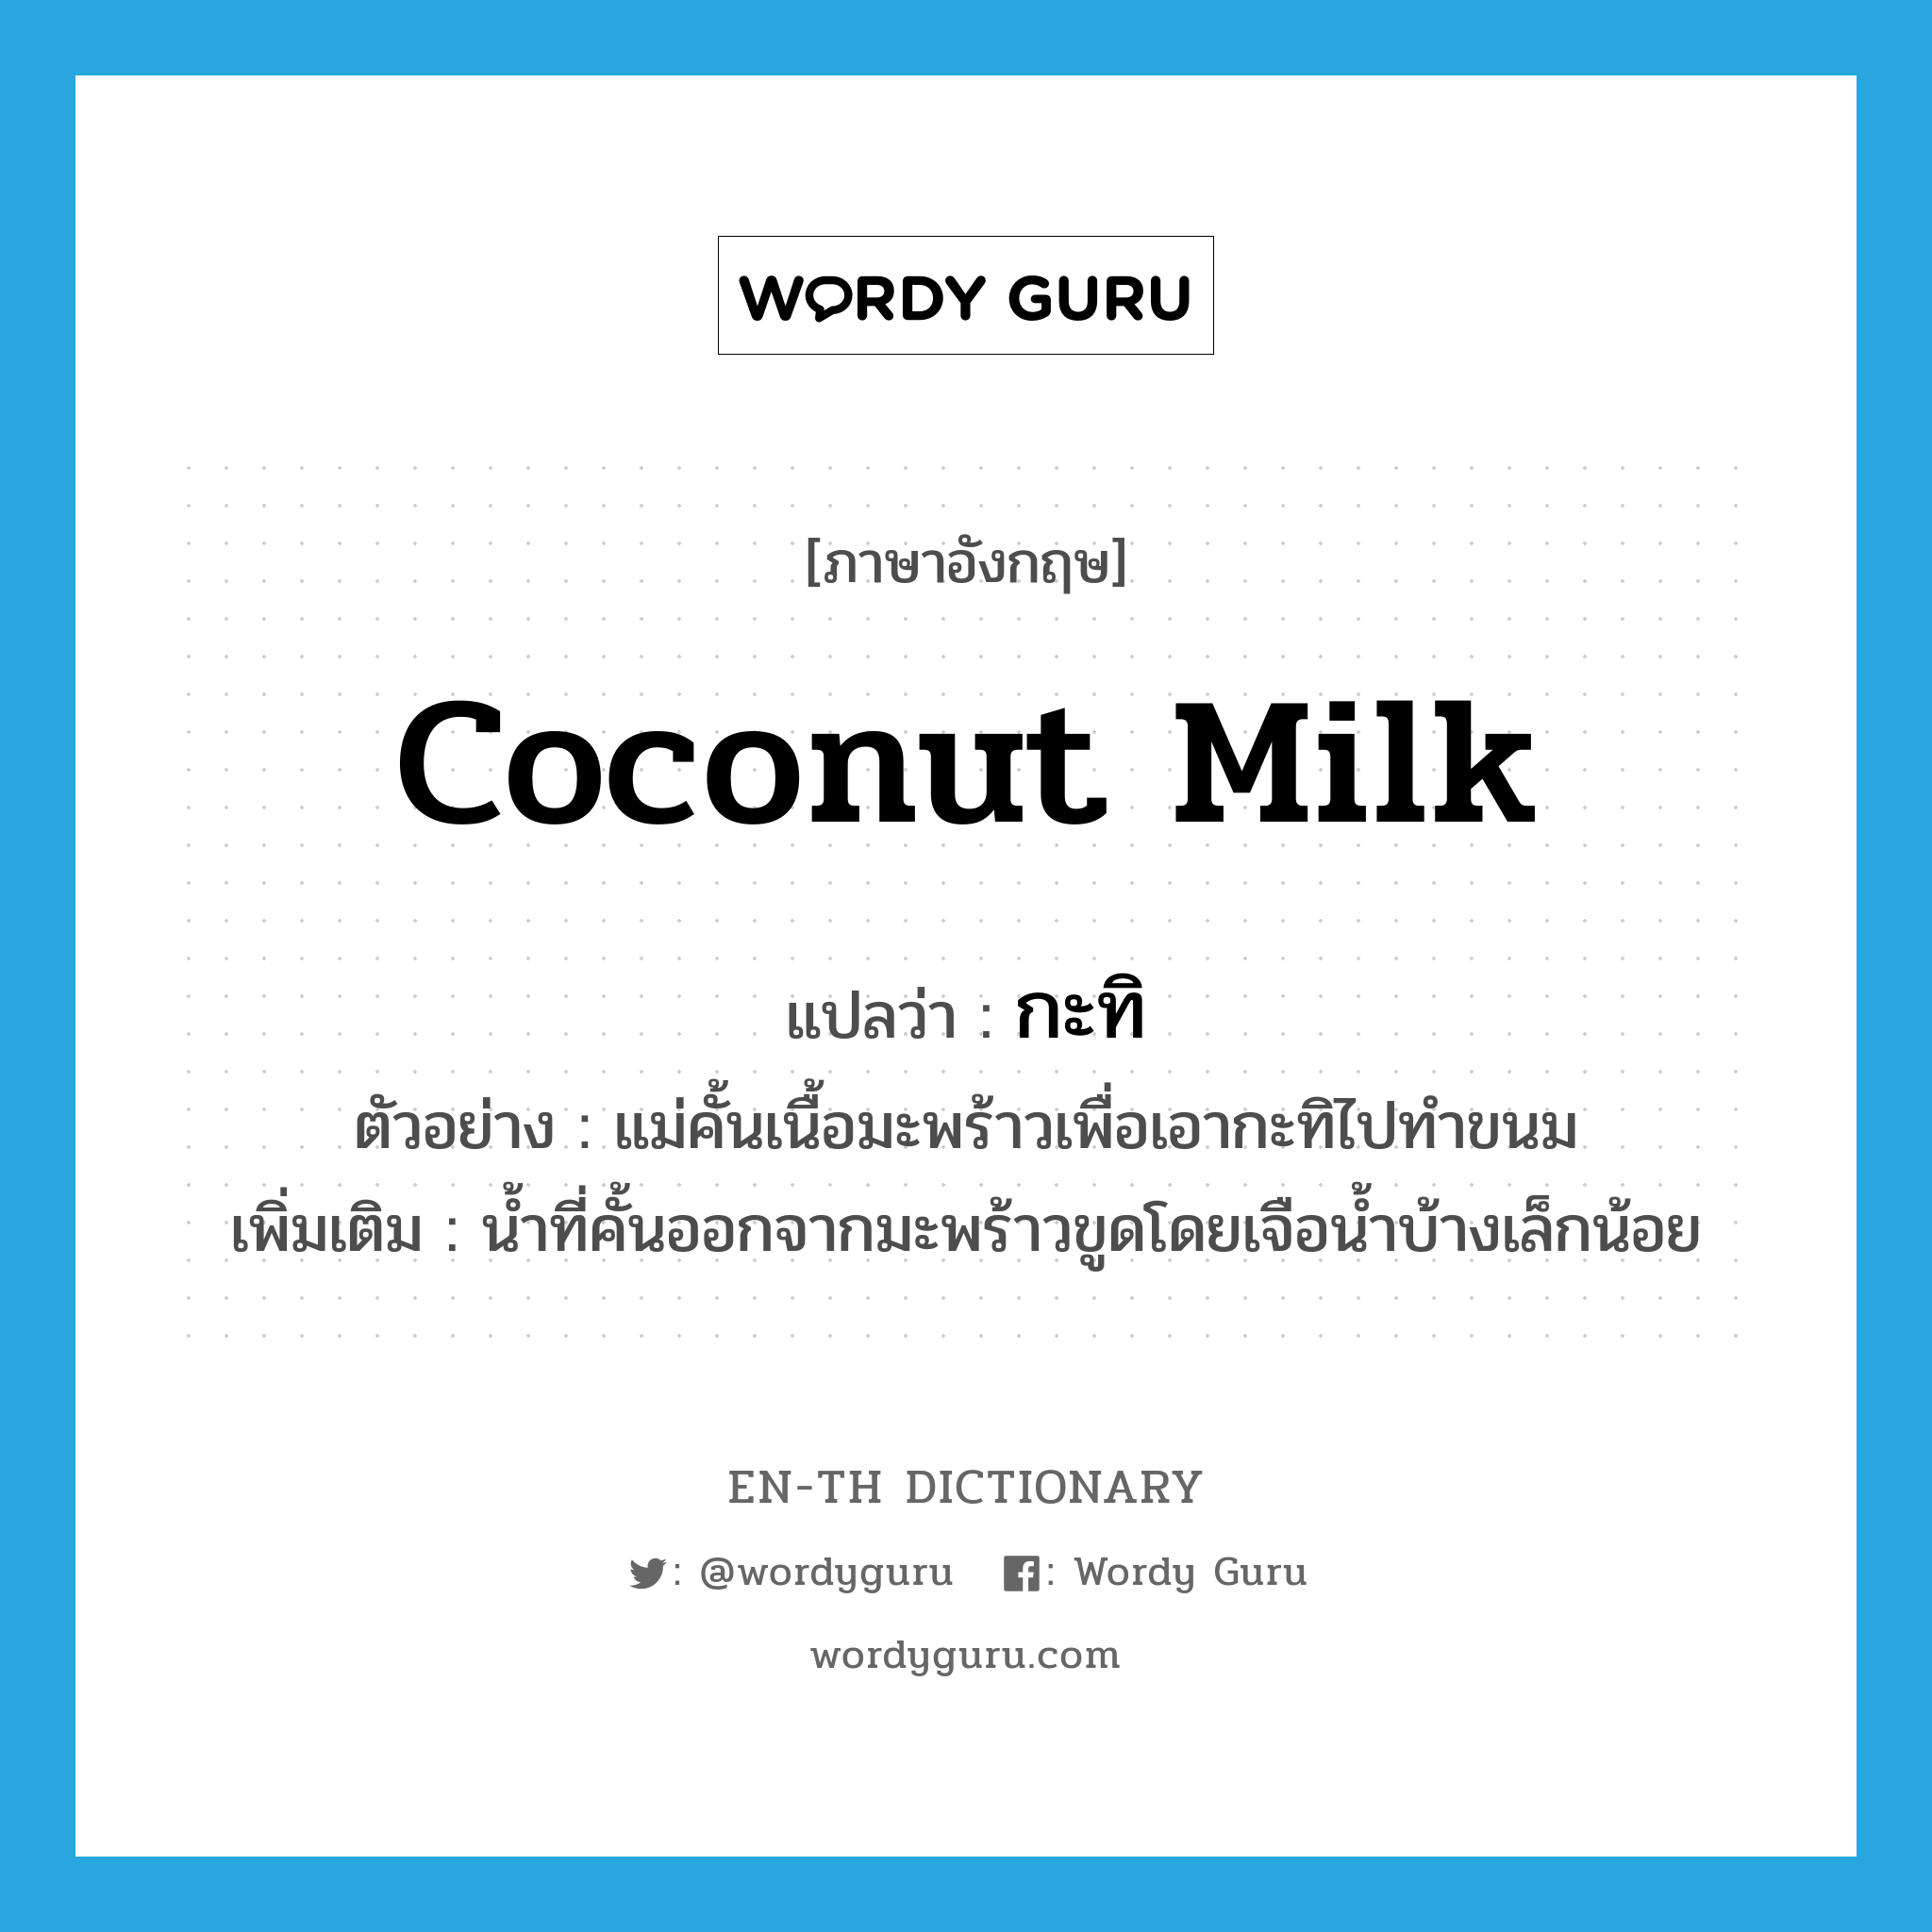 กะทิ ภาษาอังกฤษ?, คำศัพท์ภาษาอังกฤษ กะทิ แปลว่า coconut milk ประเภท N ตัวอย่าง แม่คั้นเนื้อมะพร้าวเพื่อเอากะทิไปทำขนม เพิ่มเติม น้ำที่คั้นออกจากมะพร้าวขูดโดยเจือน้ำบ้างเล็กน้อย หมวด N